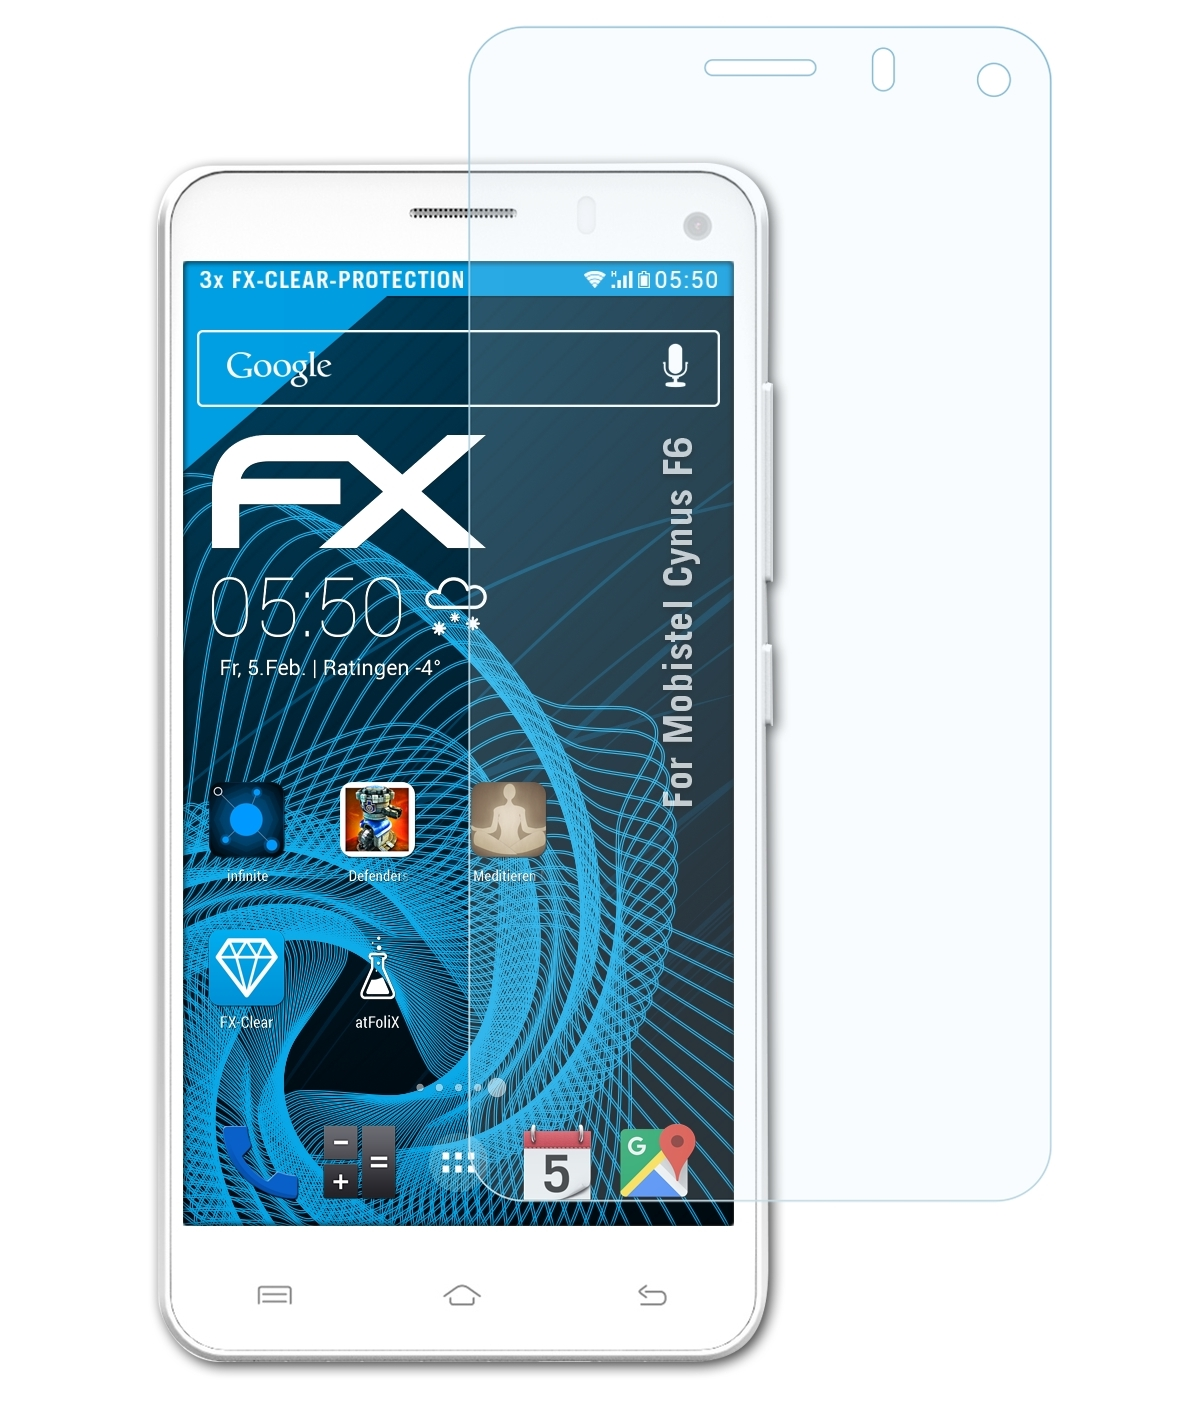 ATFOLIX 3x FX-Clear Displayschutz(für Cynus F6) Mobistel